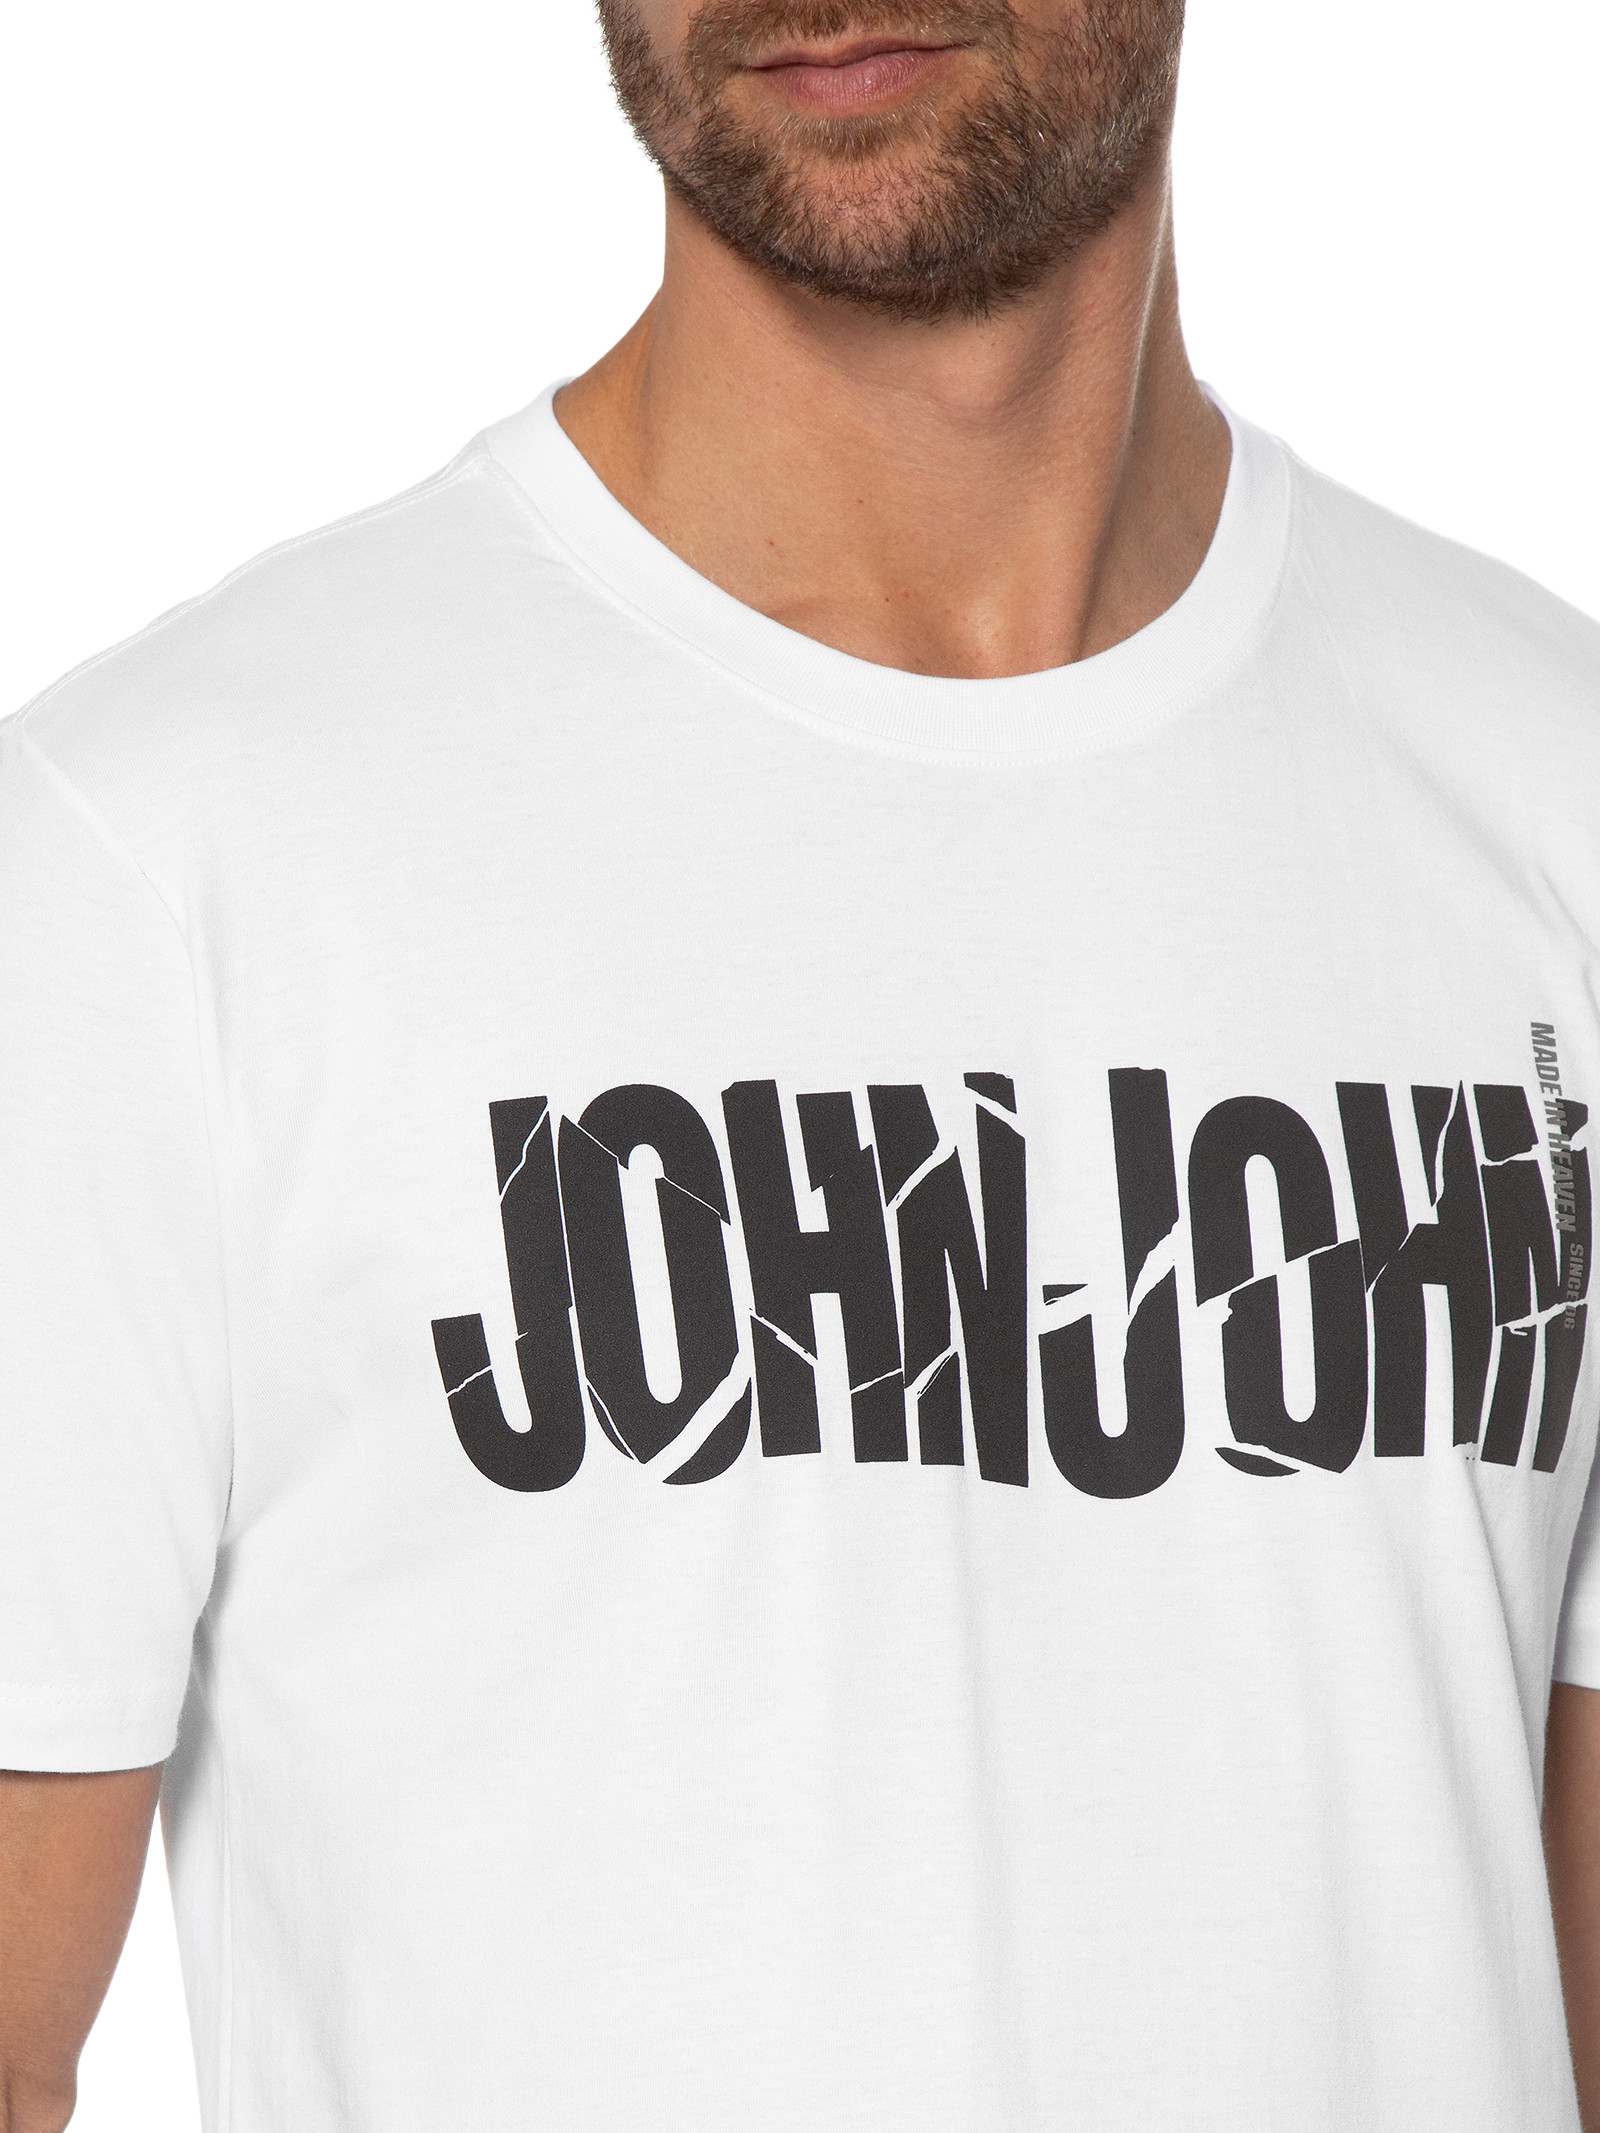 Camiseta John John Broken Preta - Compre Agora